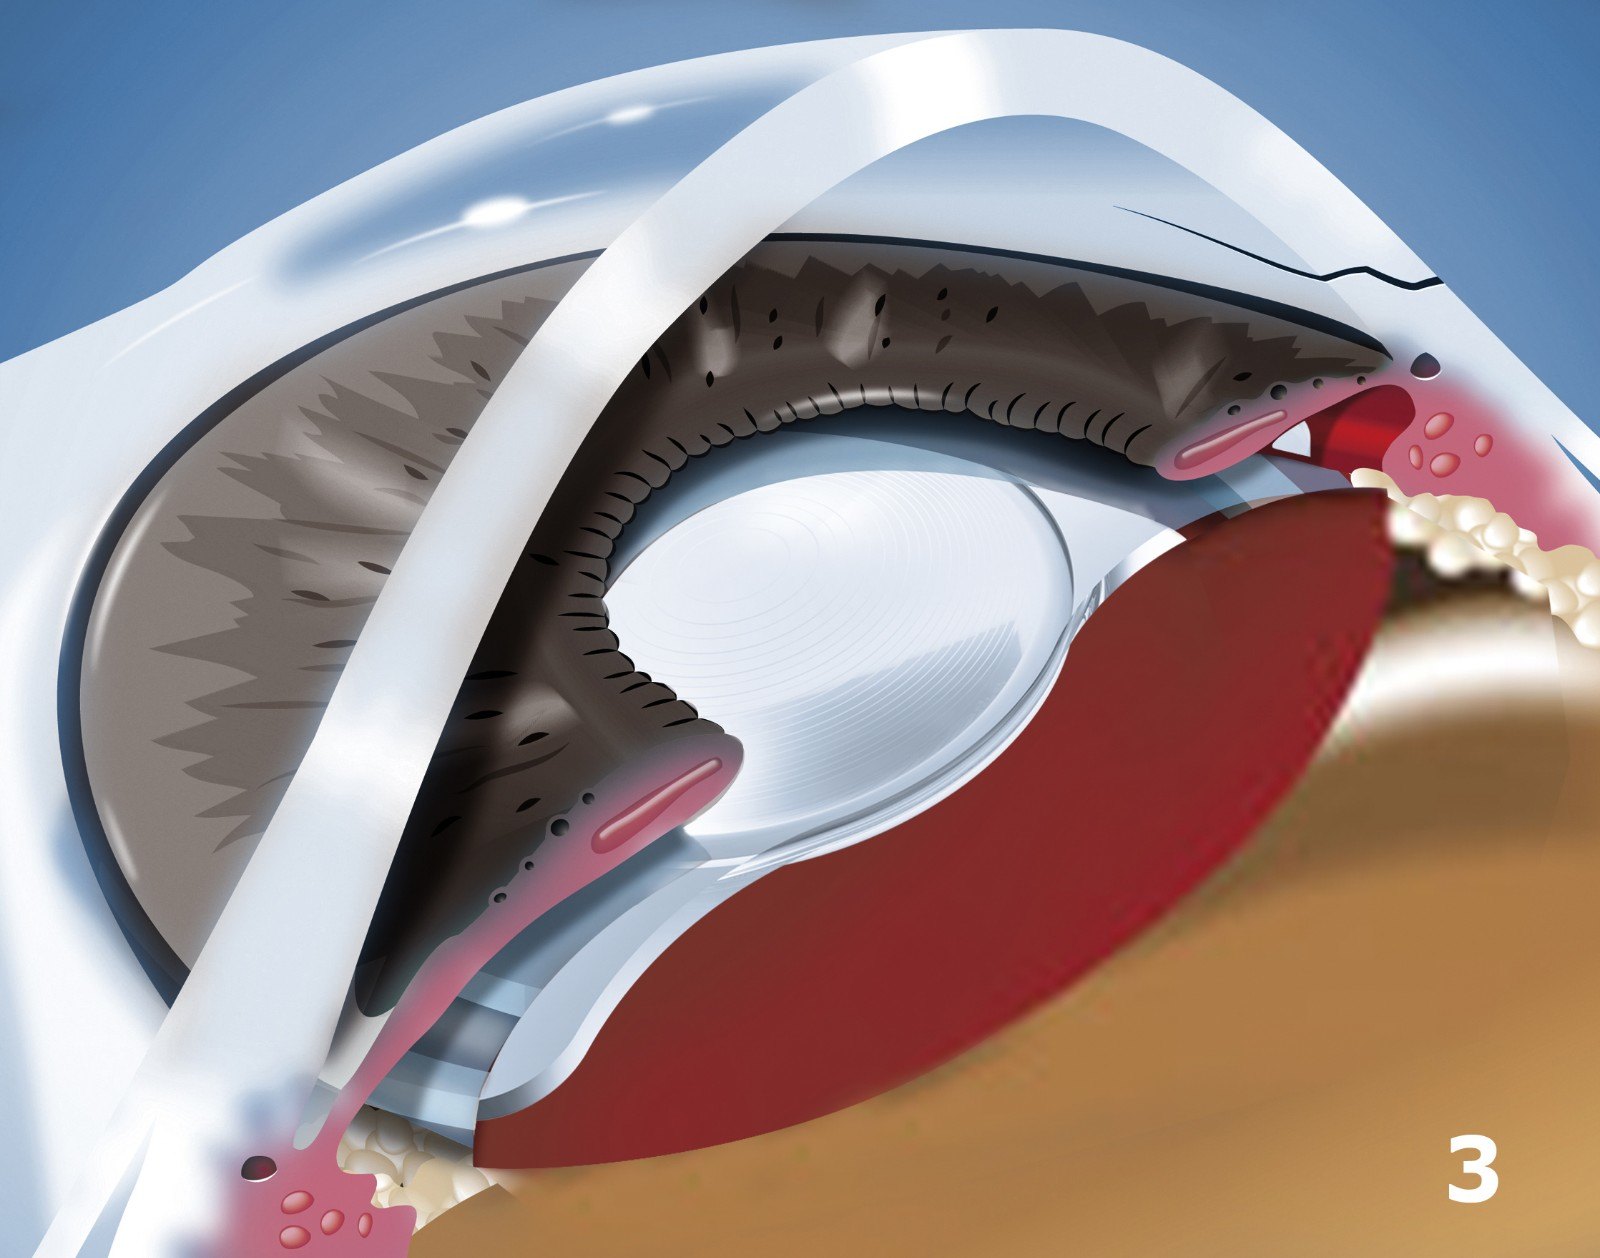 手术全程在显微镜下进行,利用注射方式将人工晶体折叠注入眼内后展开